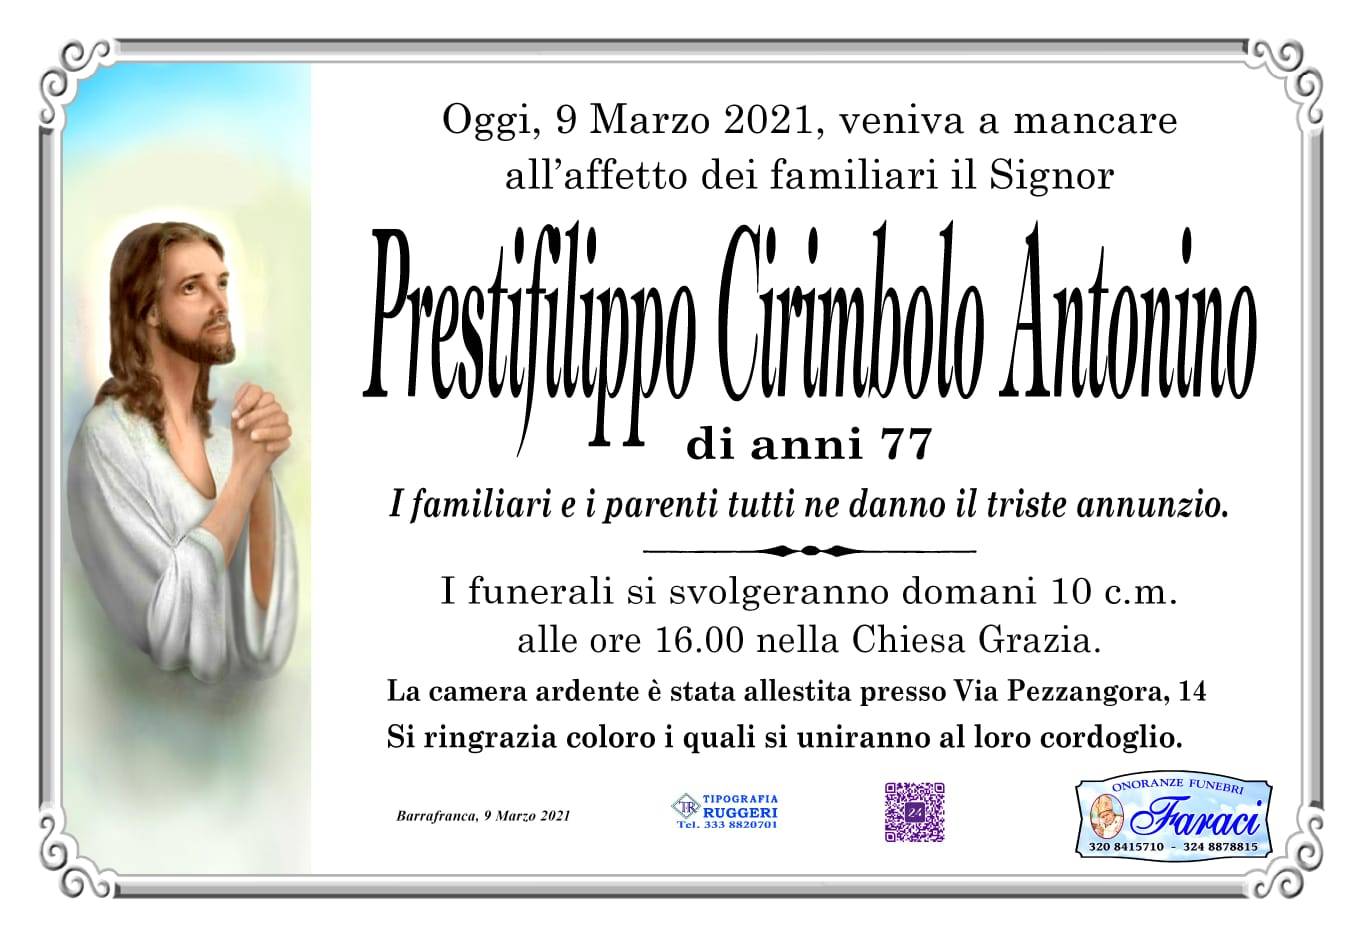 Antonino Prestifilippo Cirimbolo